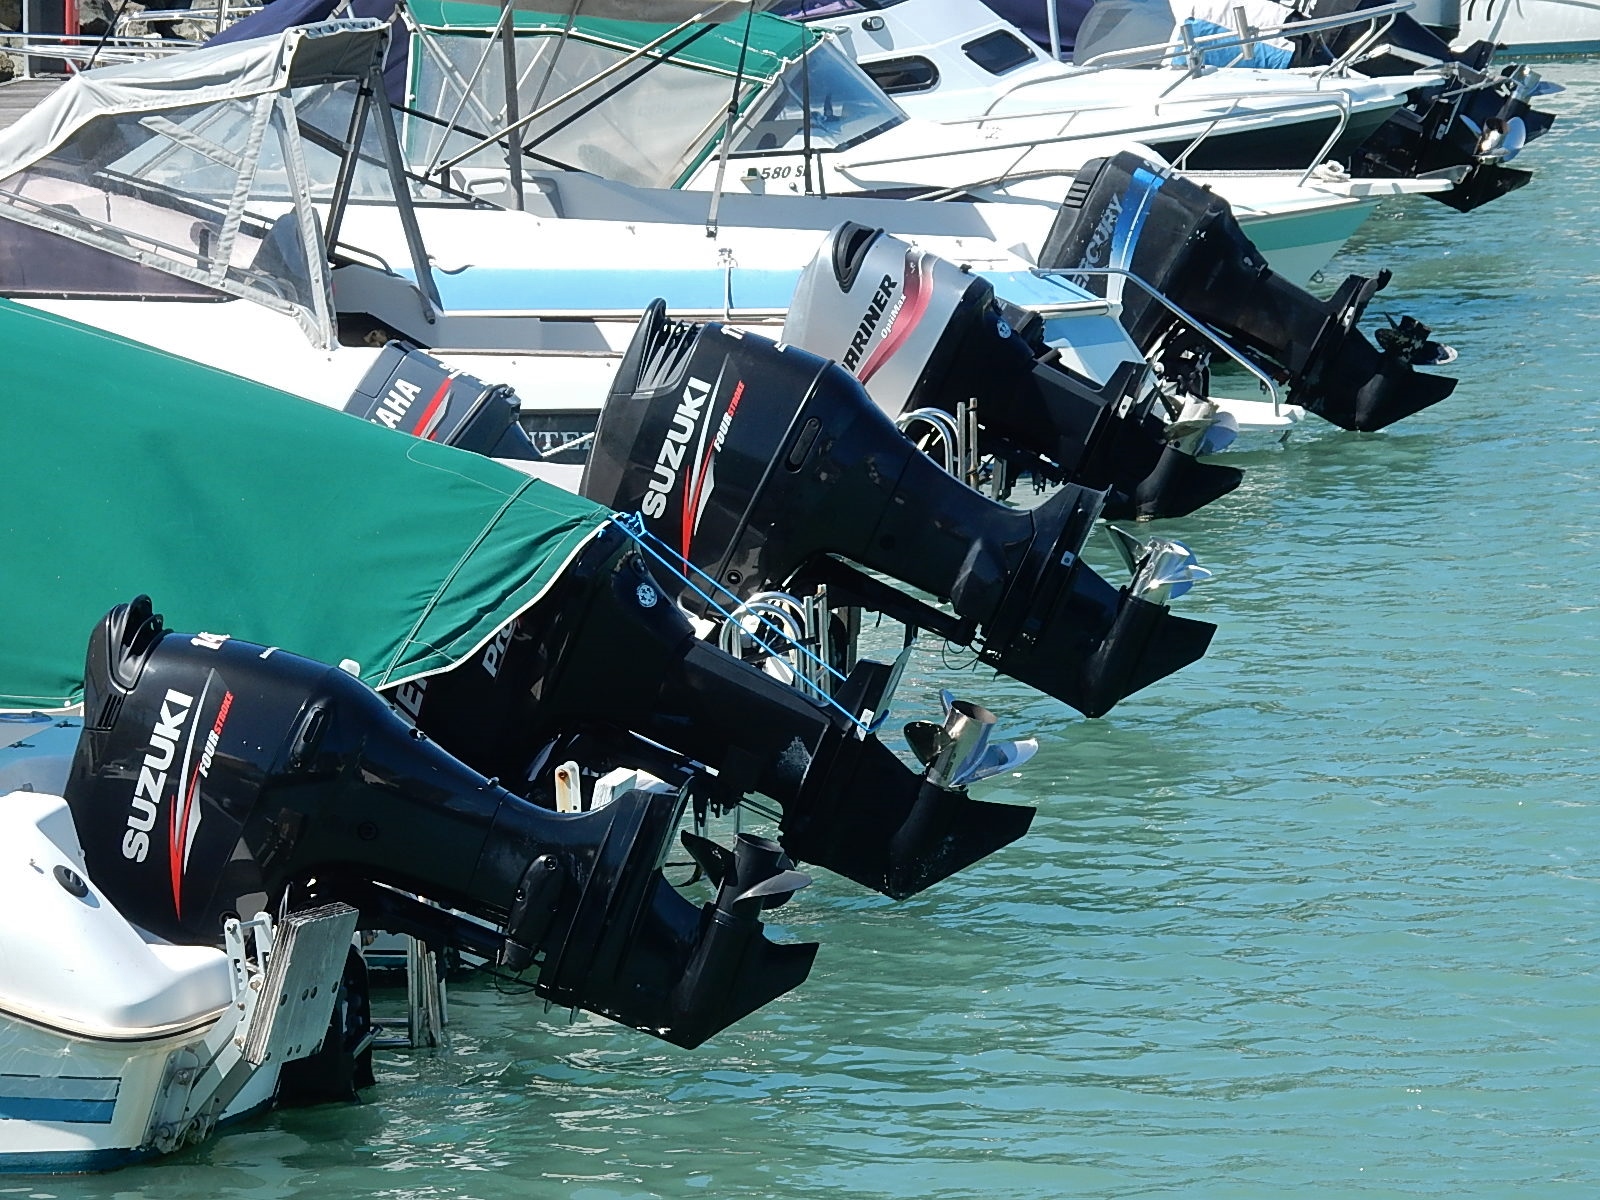 Aluminium boats with Suzuki engines docked in a marina.